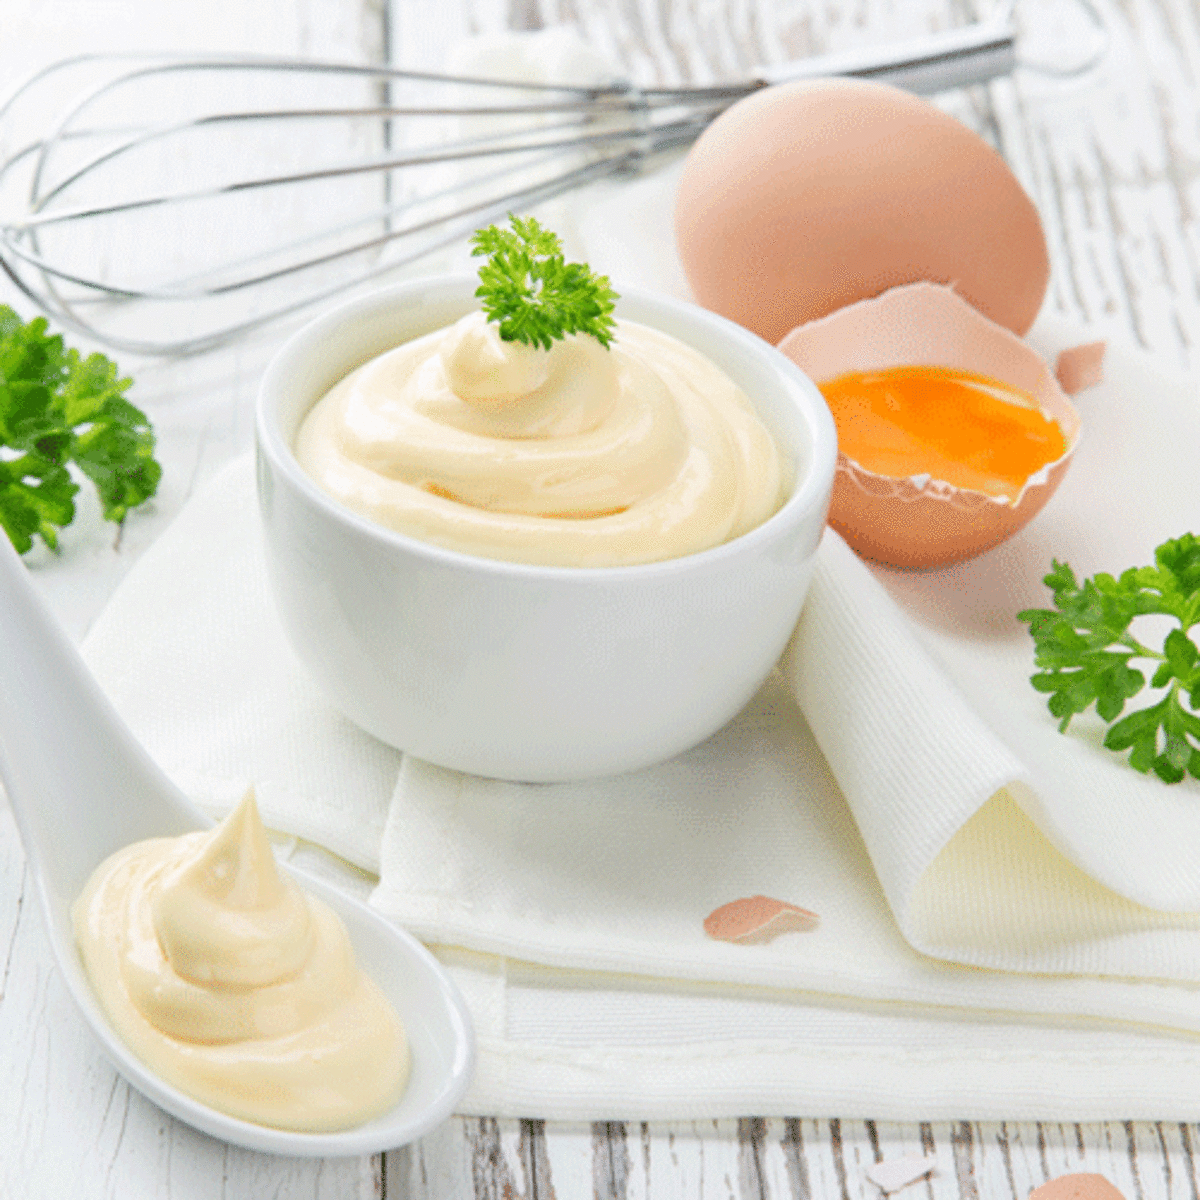 Sốt mayonnaise là chất gì?